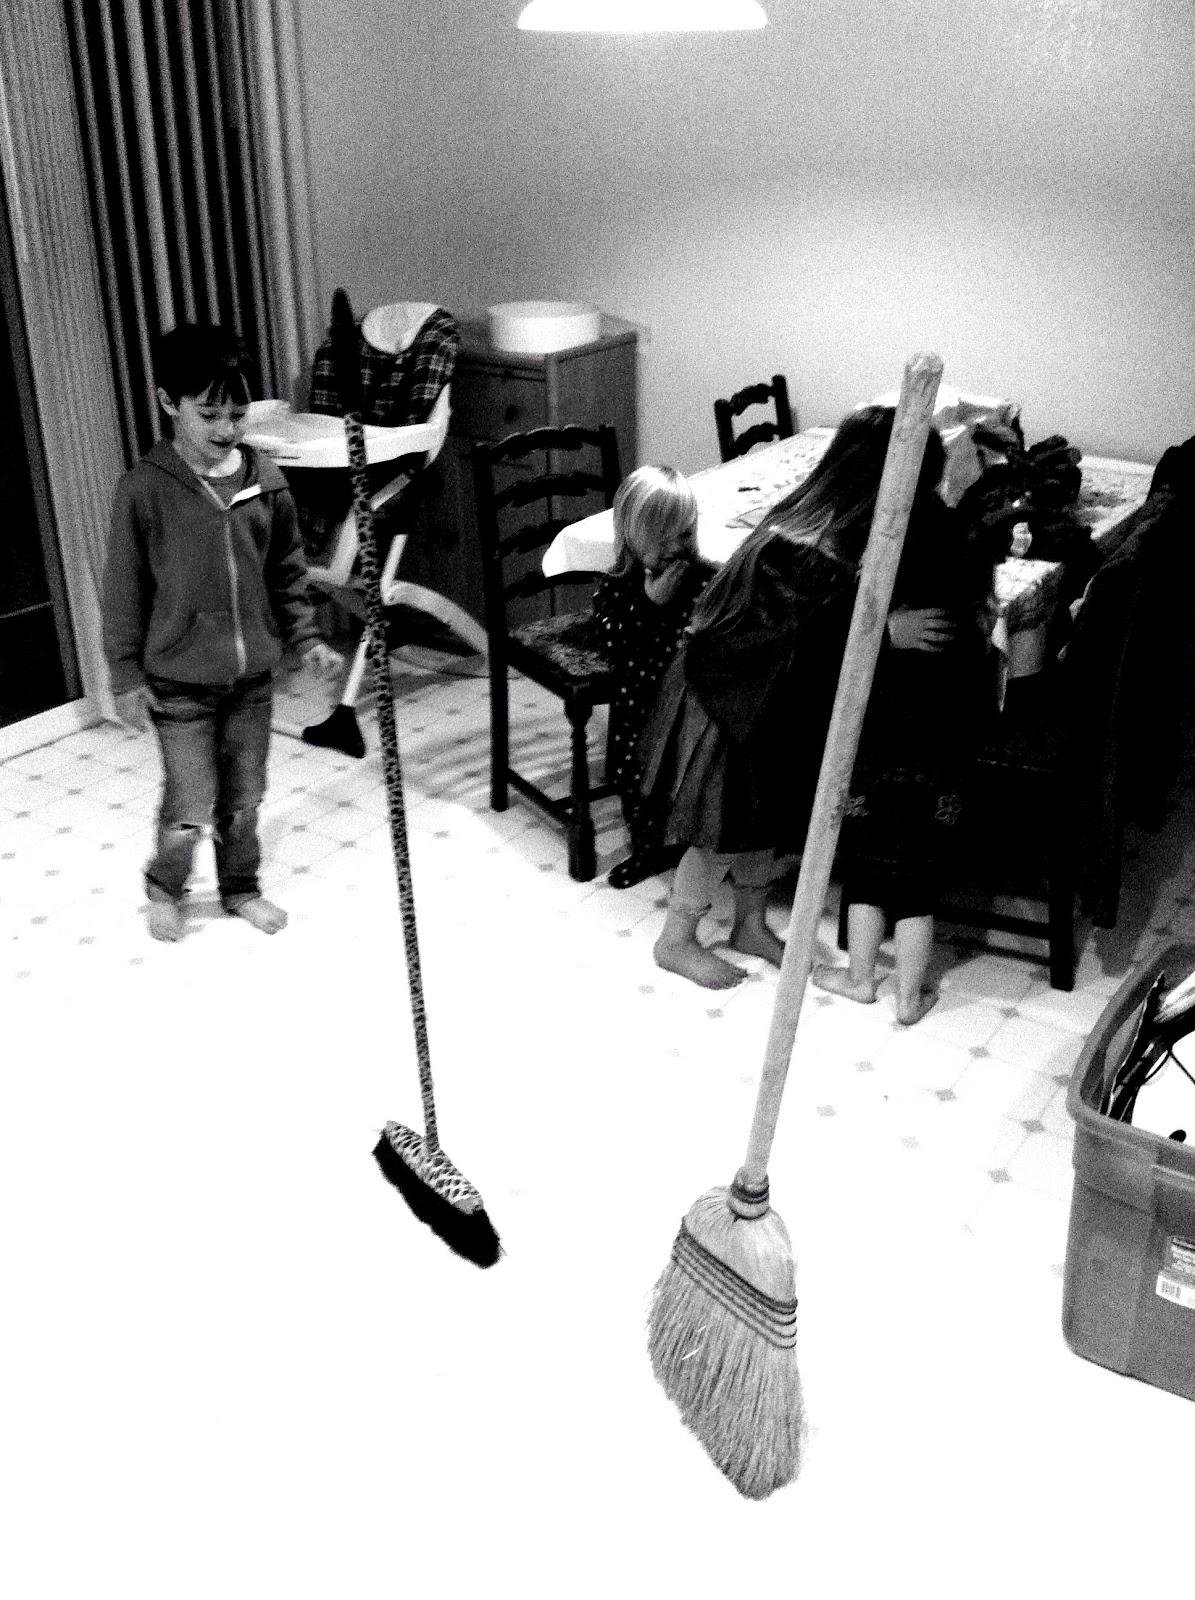 DASO Photo: Balancing Brooms